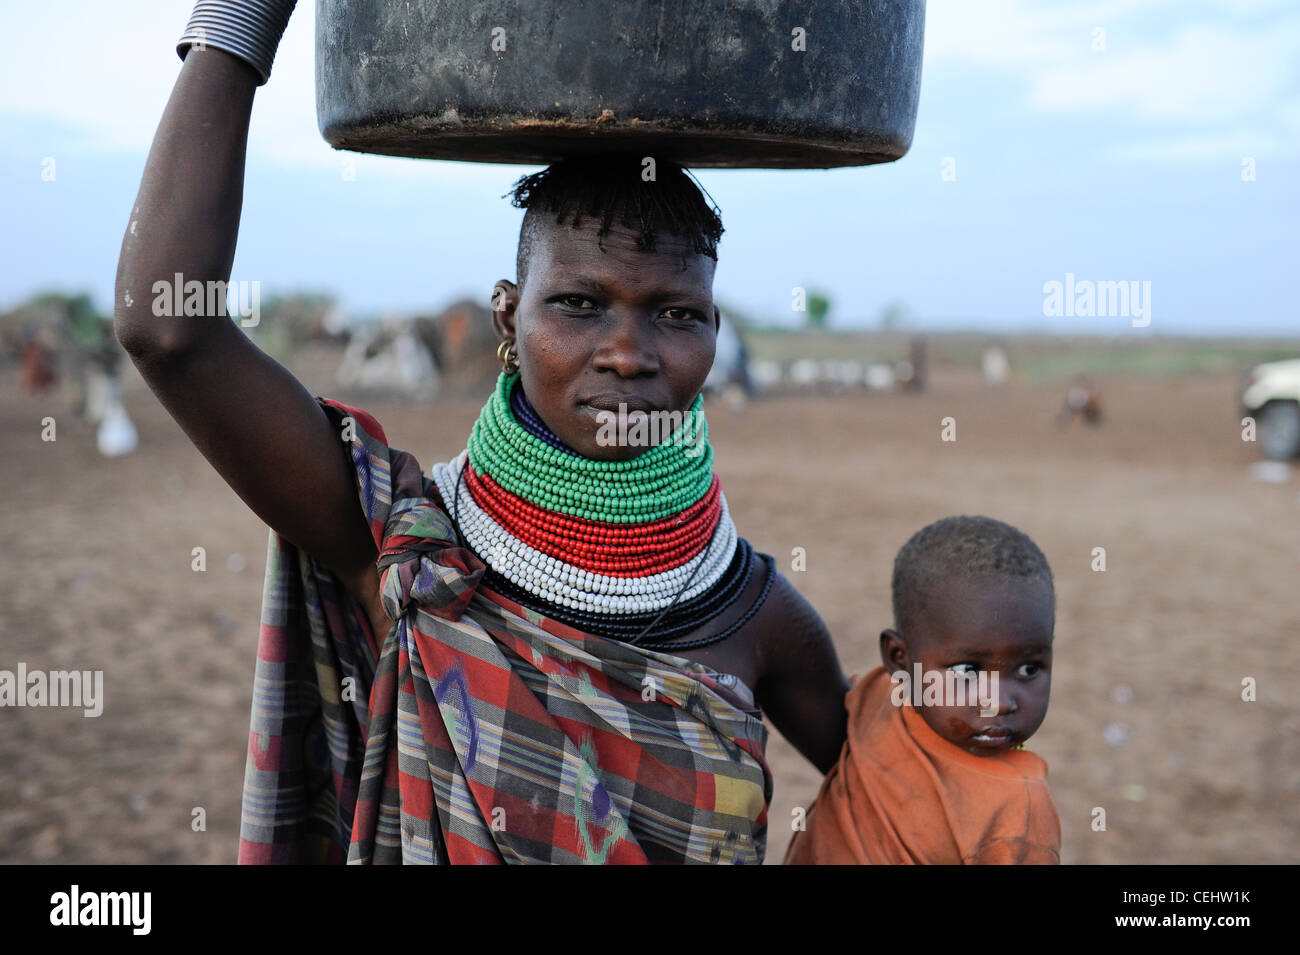 KENYA Regione Turkana, Kakuma, Turkana una tribù nilotica, la catastrofe della fame è permanente a causa del cambiamento climatico e della siccità, Don Bosco distribuisce cibo a donne e bambini affamati Foto Stock